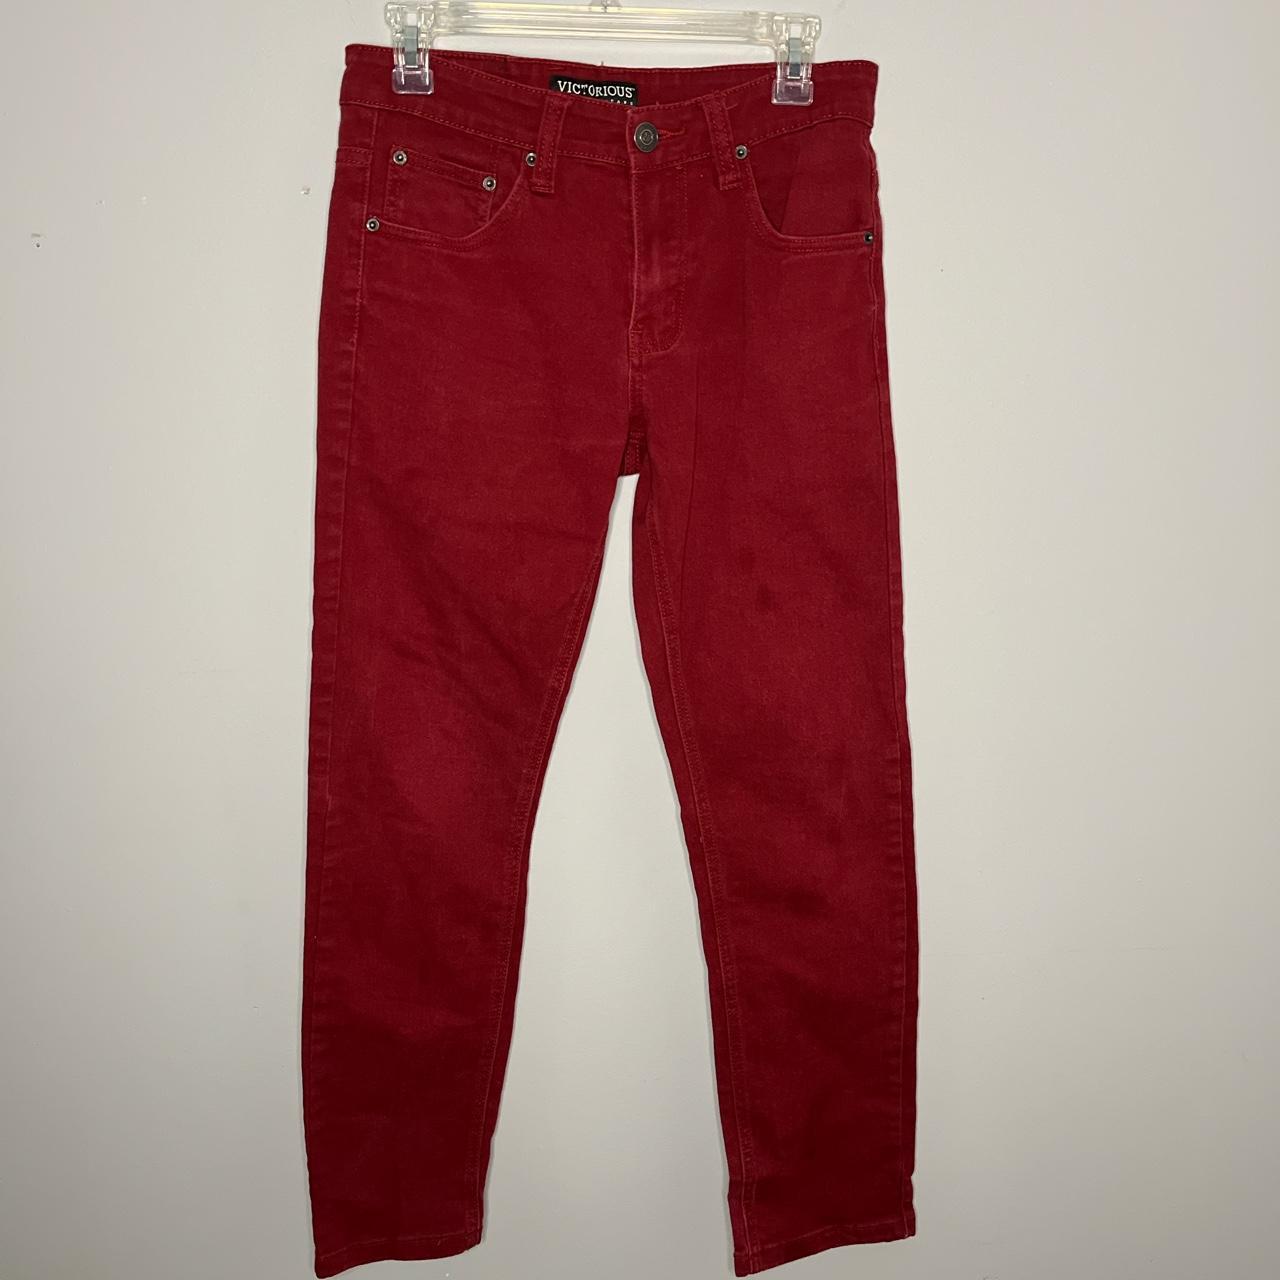 Diesel Getlegg Jeans, 0111C Red Wash, Slim, 49% OFF